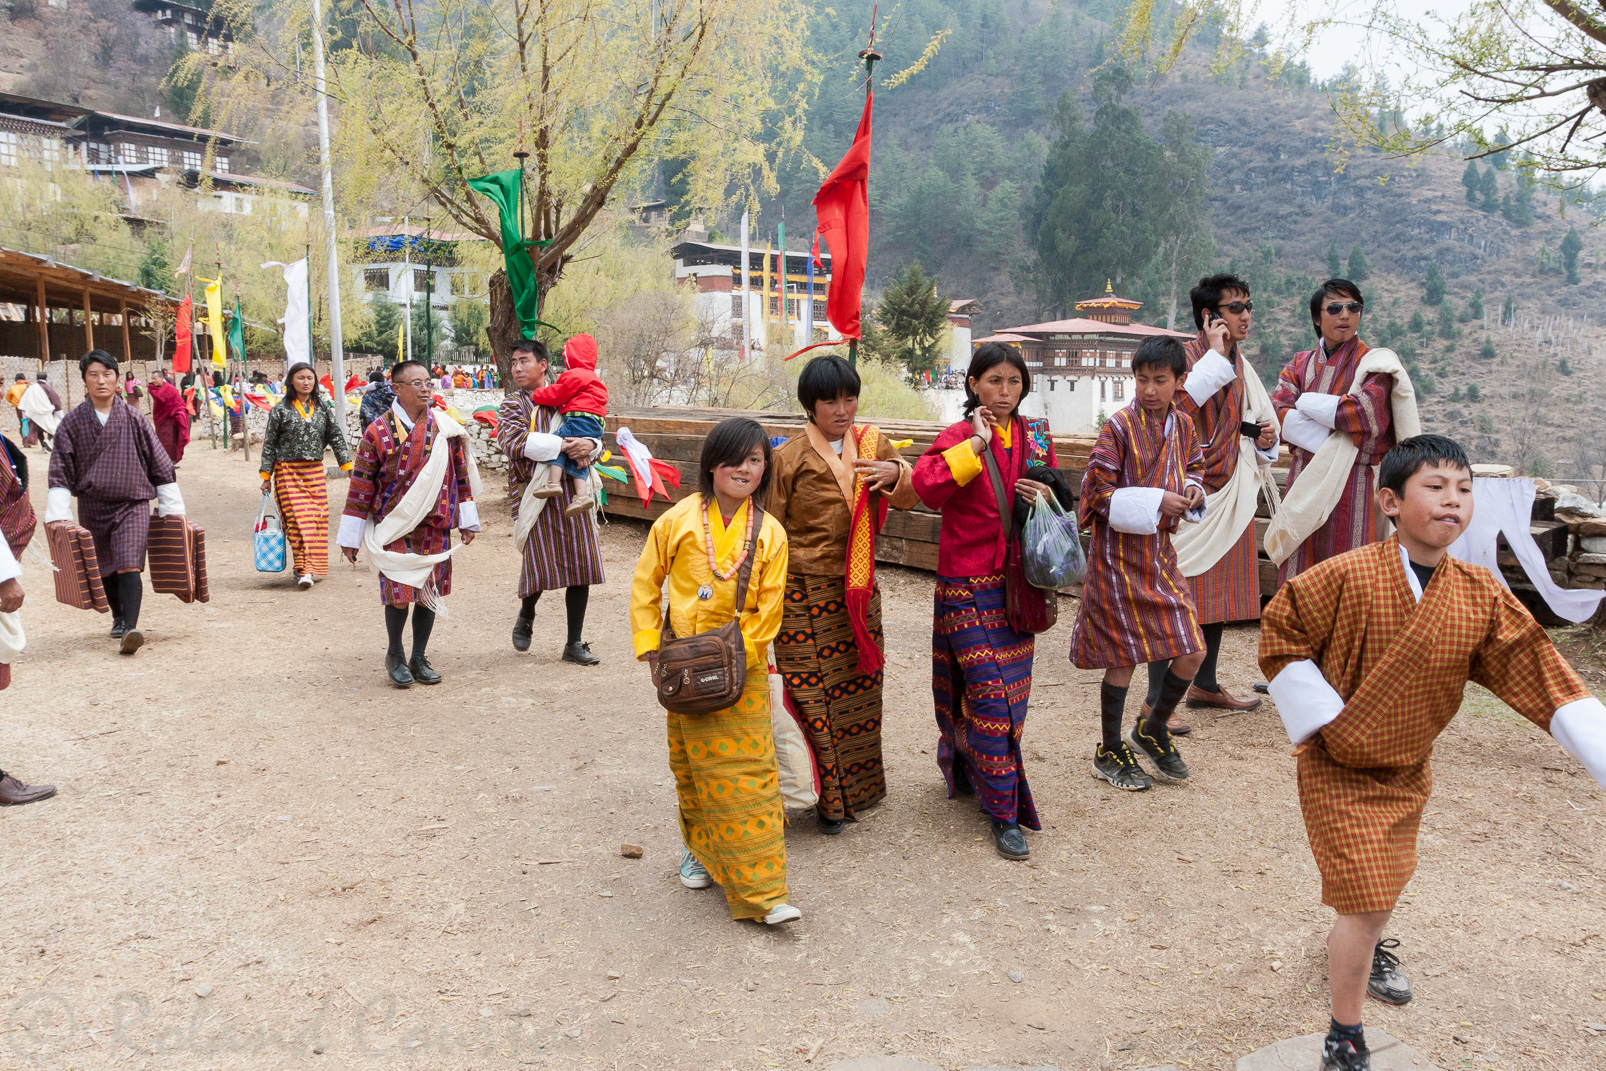 Le festival de Paro a lieu chaque année en mars pendant 5 jours. Les pèlerins arborent alors leurs plus beaux vêtements et parures.